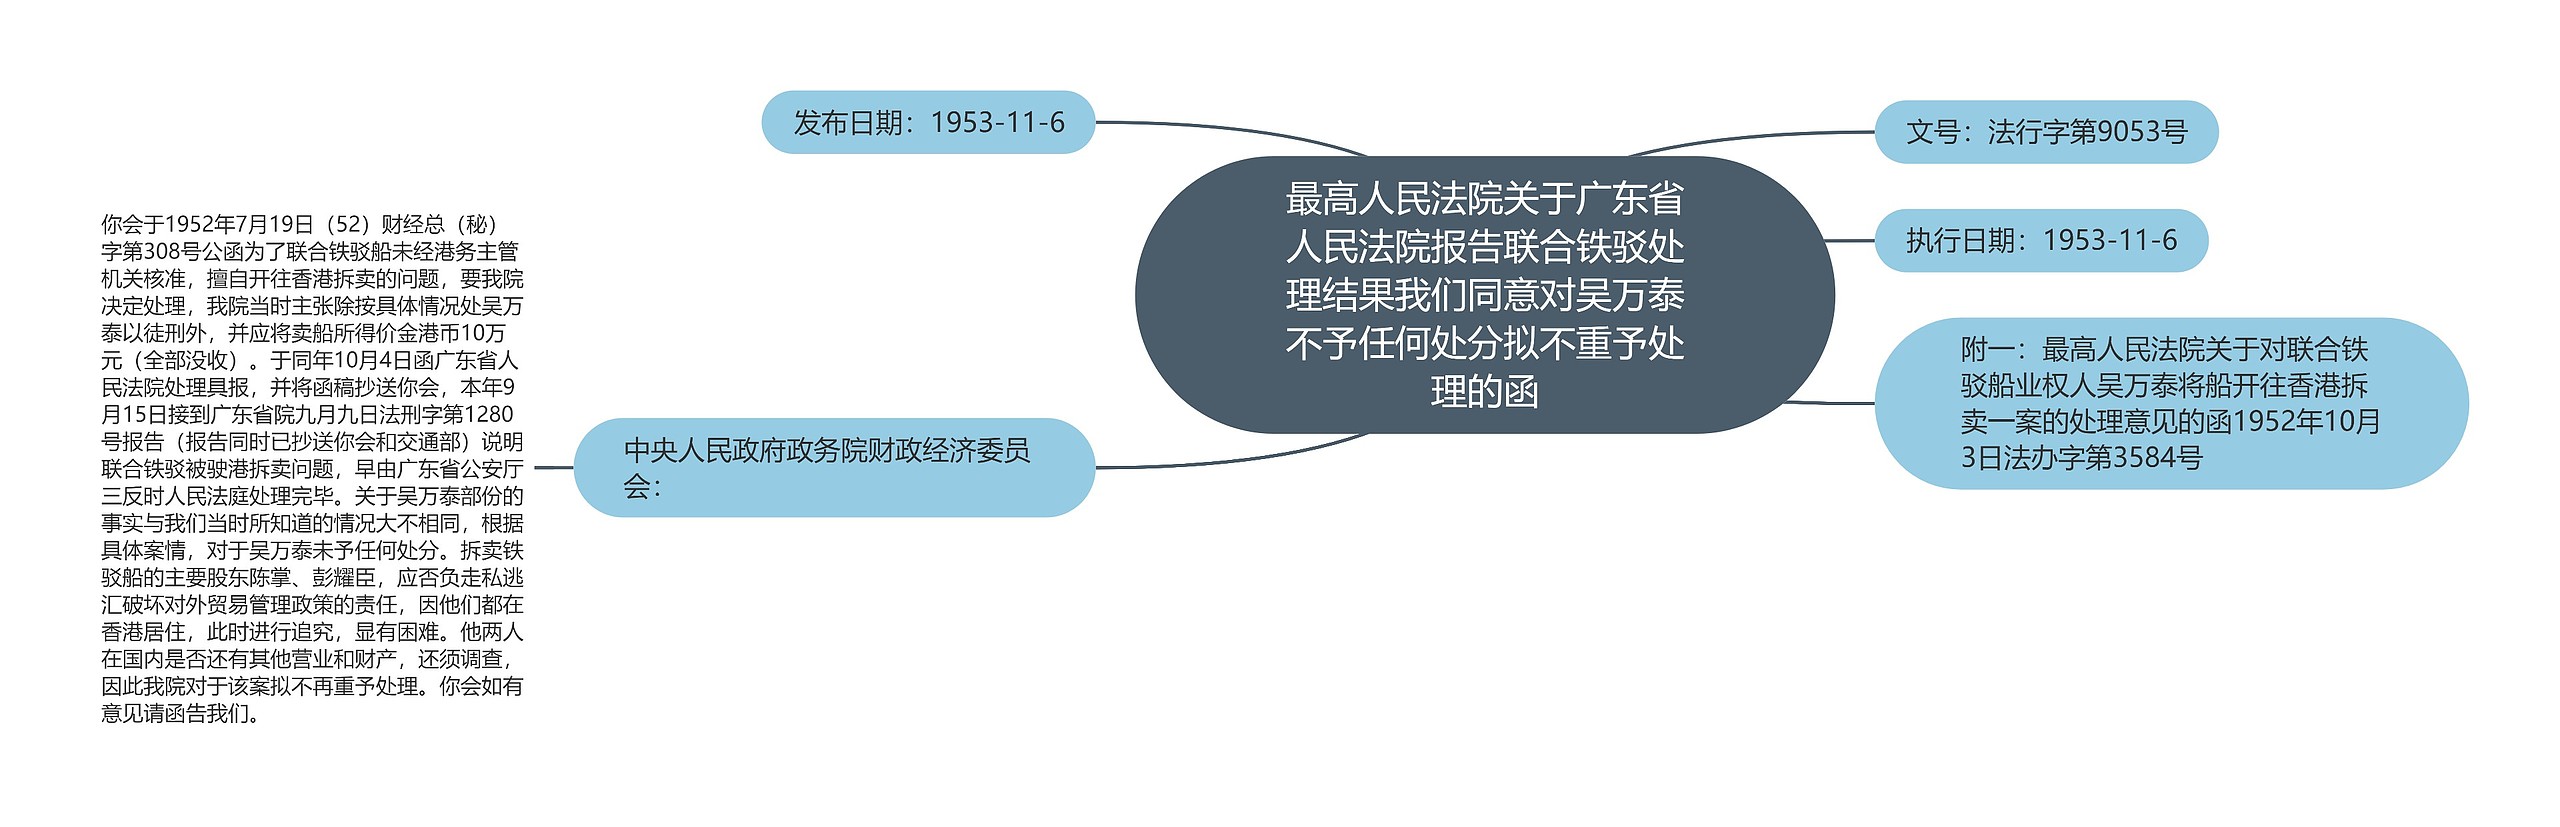 最高人民法院关于广东省人民法院报告联合铁驳处理结果我们同意对吴万泰不予任何处分拟不重予处理的函思维导图